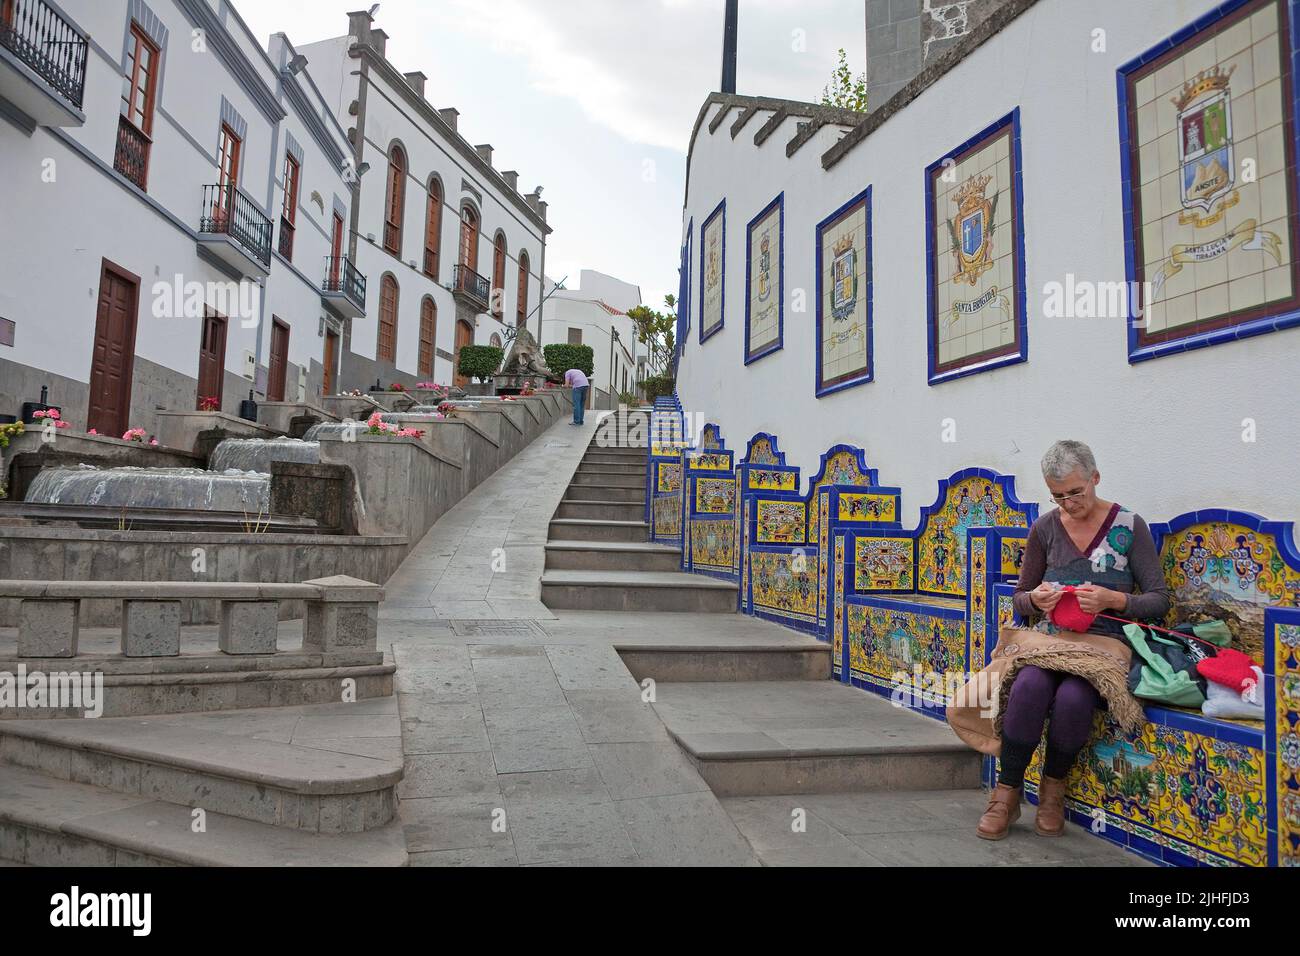 Promenade Paseo de Canarias avec carreaux de céramique, femme canarienne assise sur un banc et des tricots, Firgas, Grand Canary, îles Canaries, Espagne, Europe Banque D'Images